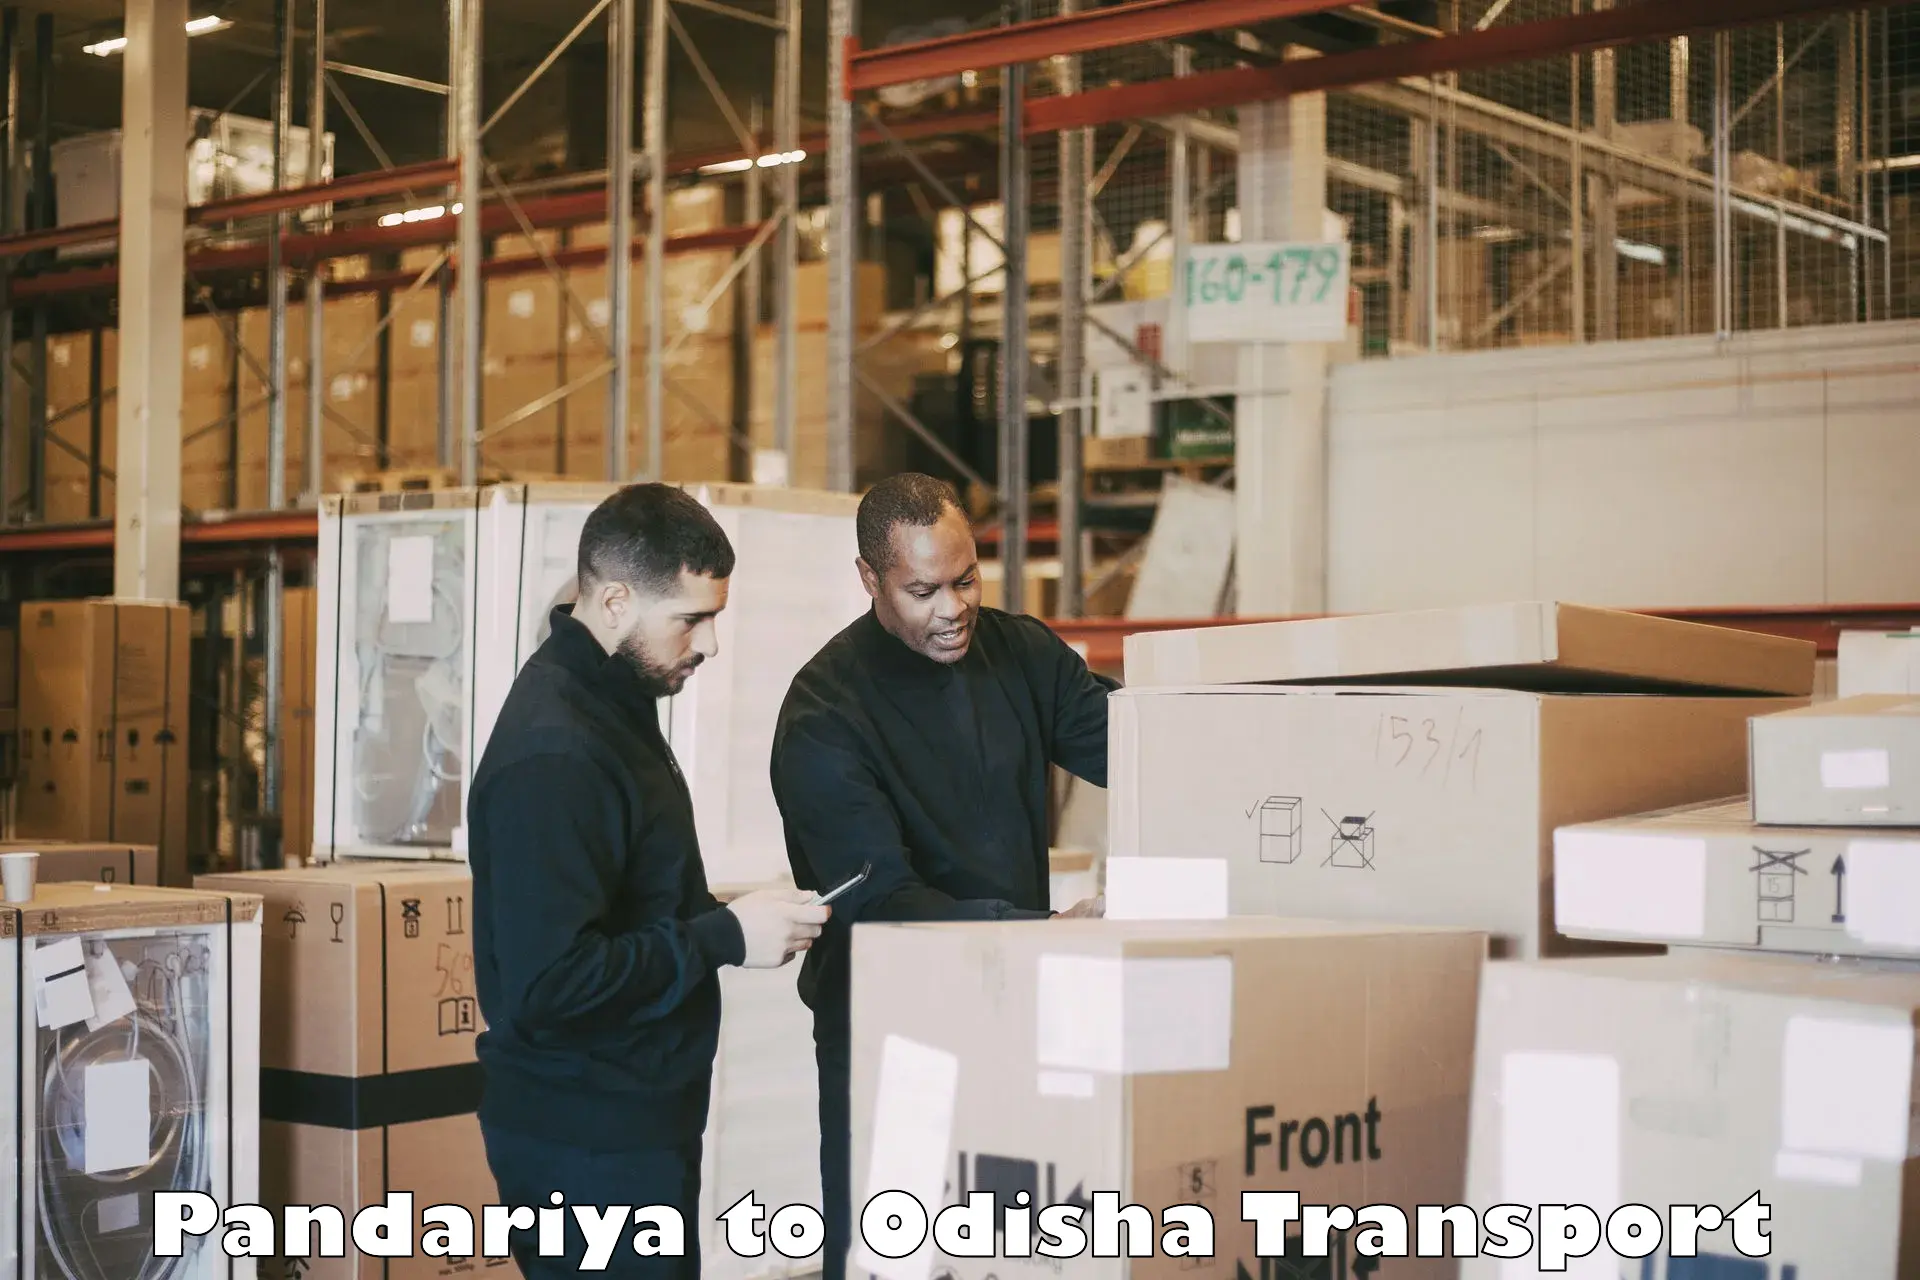 Interstate transport services Pandariya to Badamba